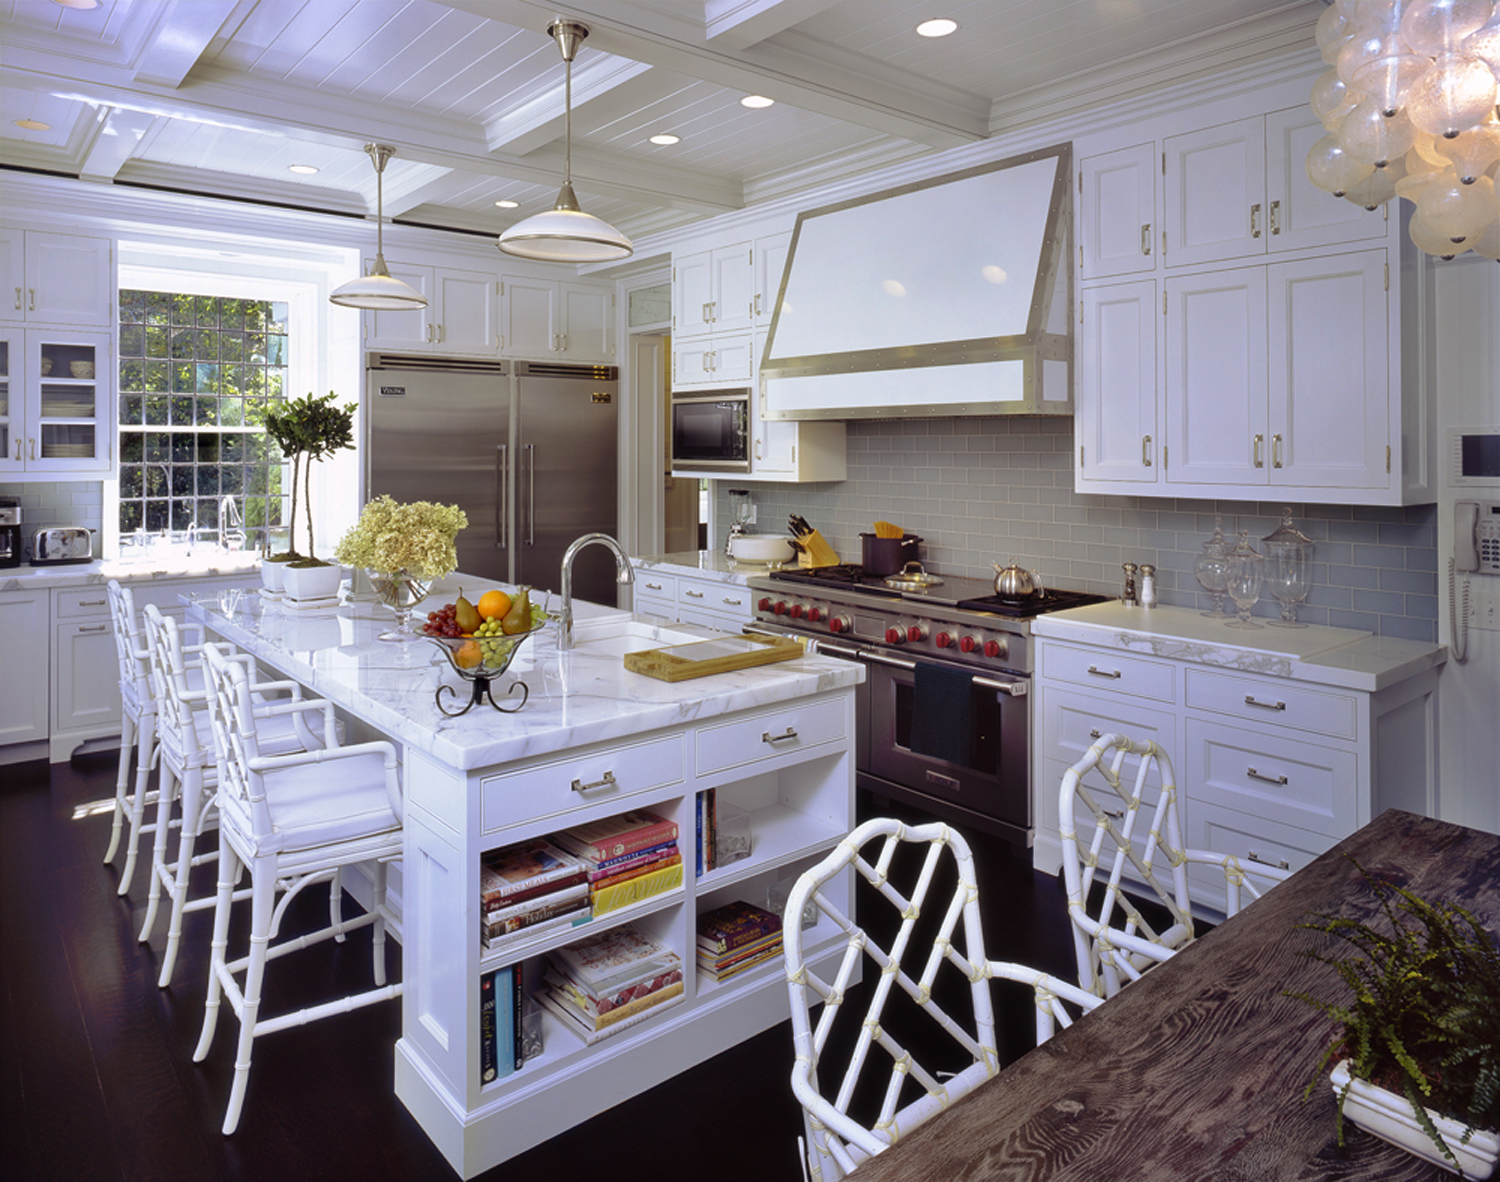 Kitchen-stainless-steel-tile-backsplash-broxville-ny-interior-w.jpg